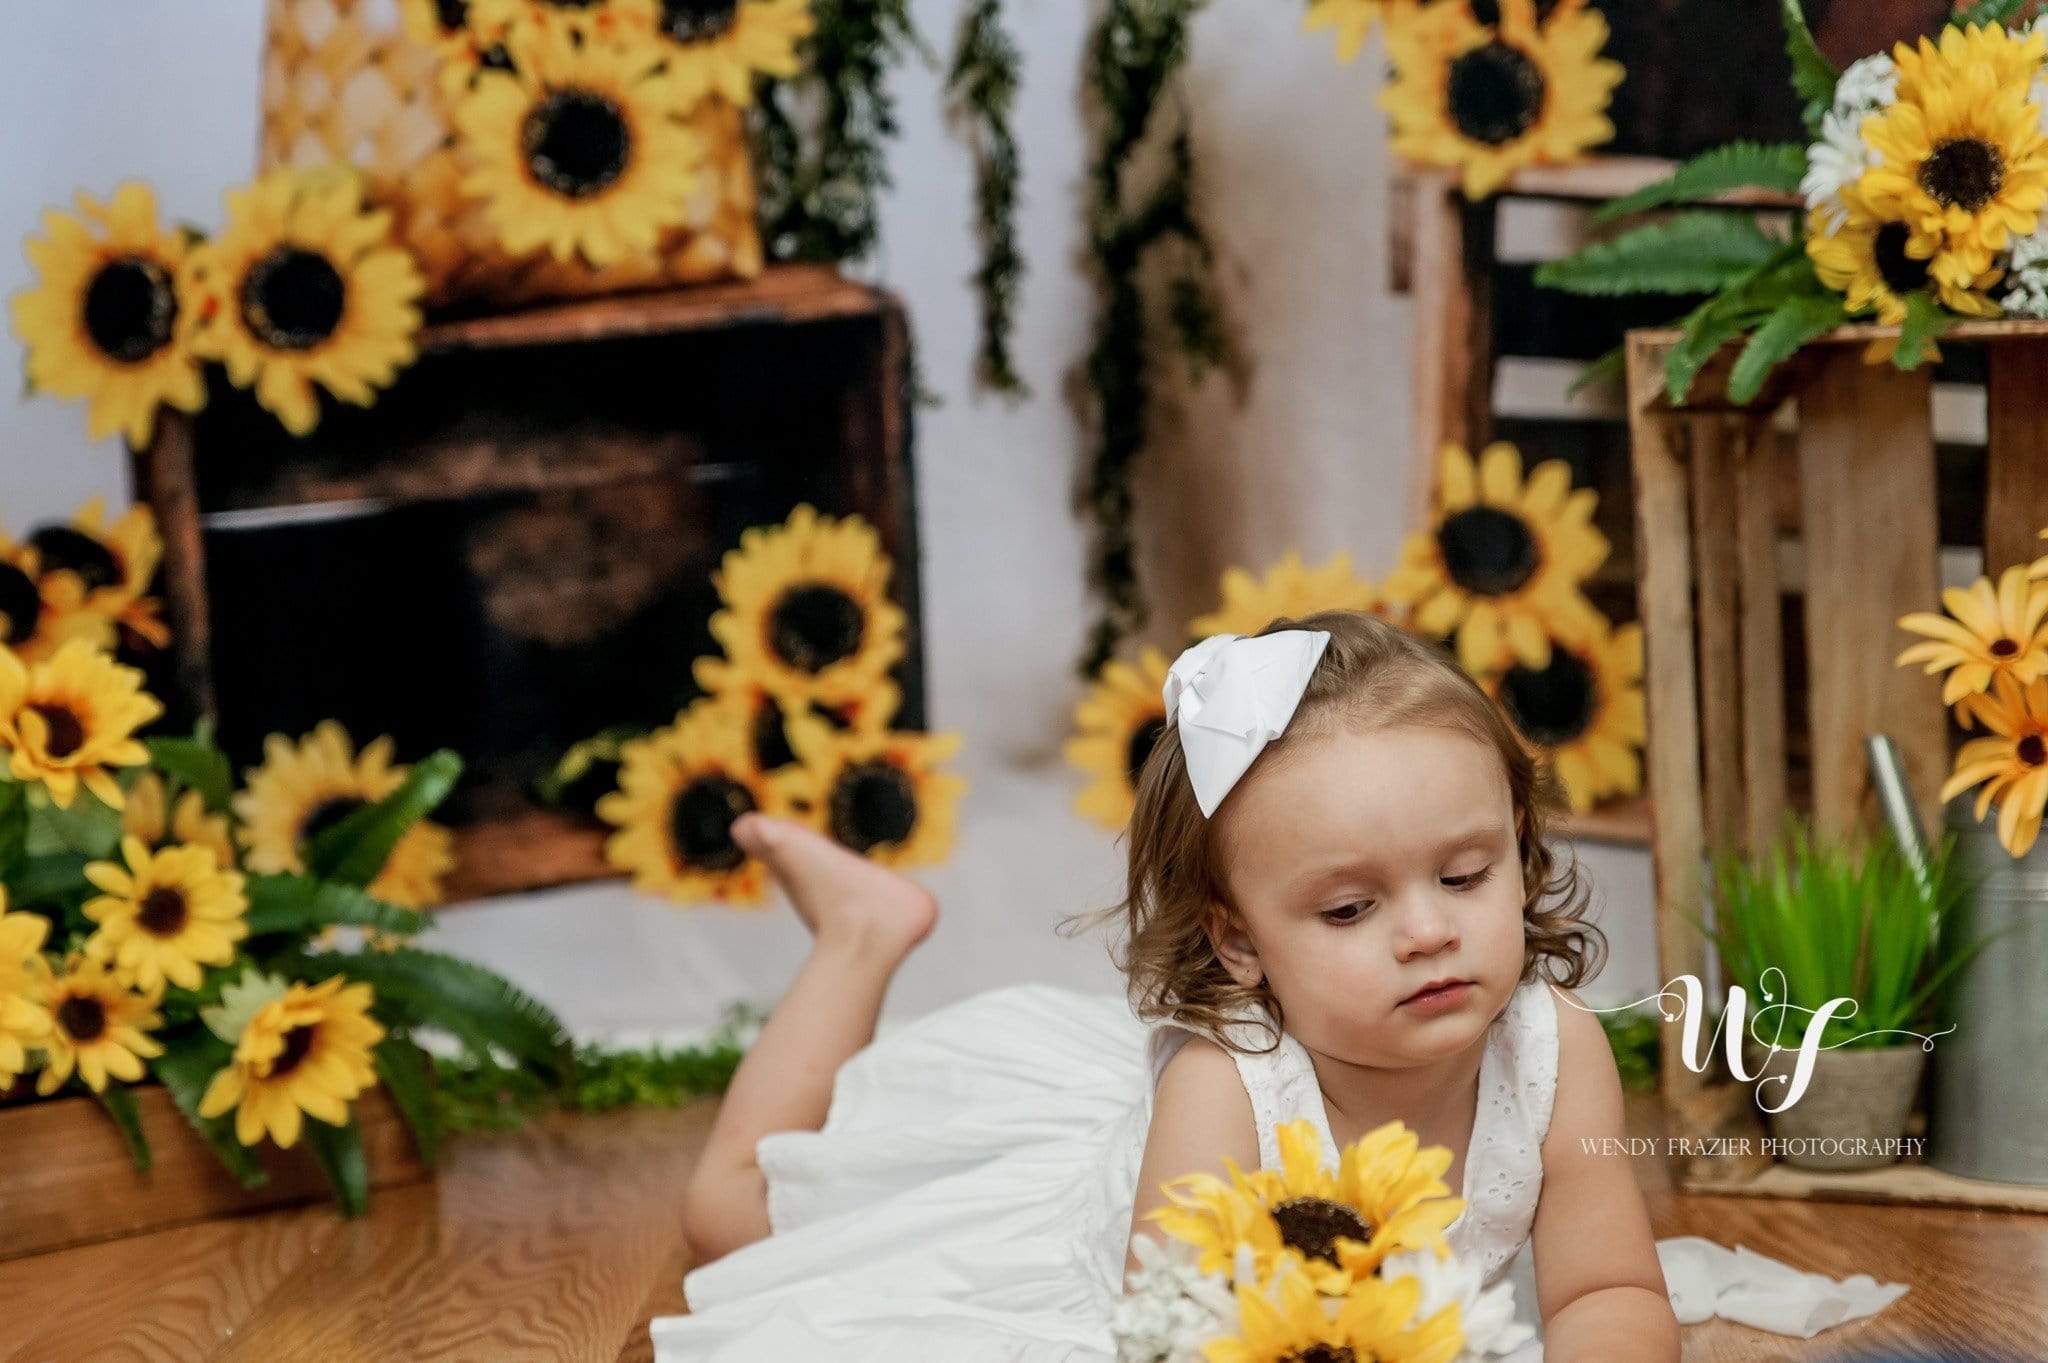 Katebackdrop鎷㈡綖Kate Sunflower Summer Backdrop for Photography Designed by Keerstan Jessop